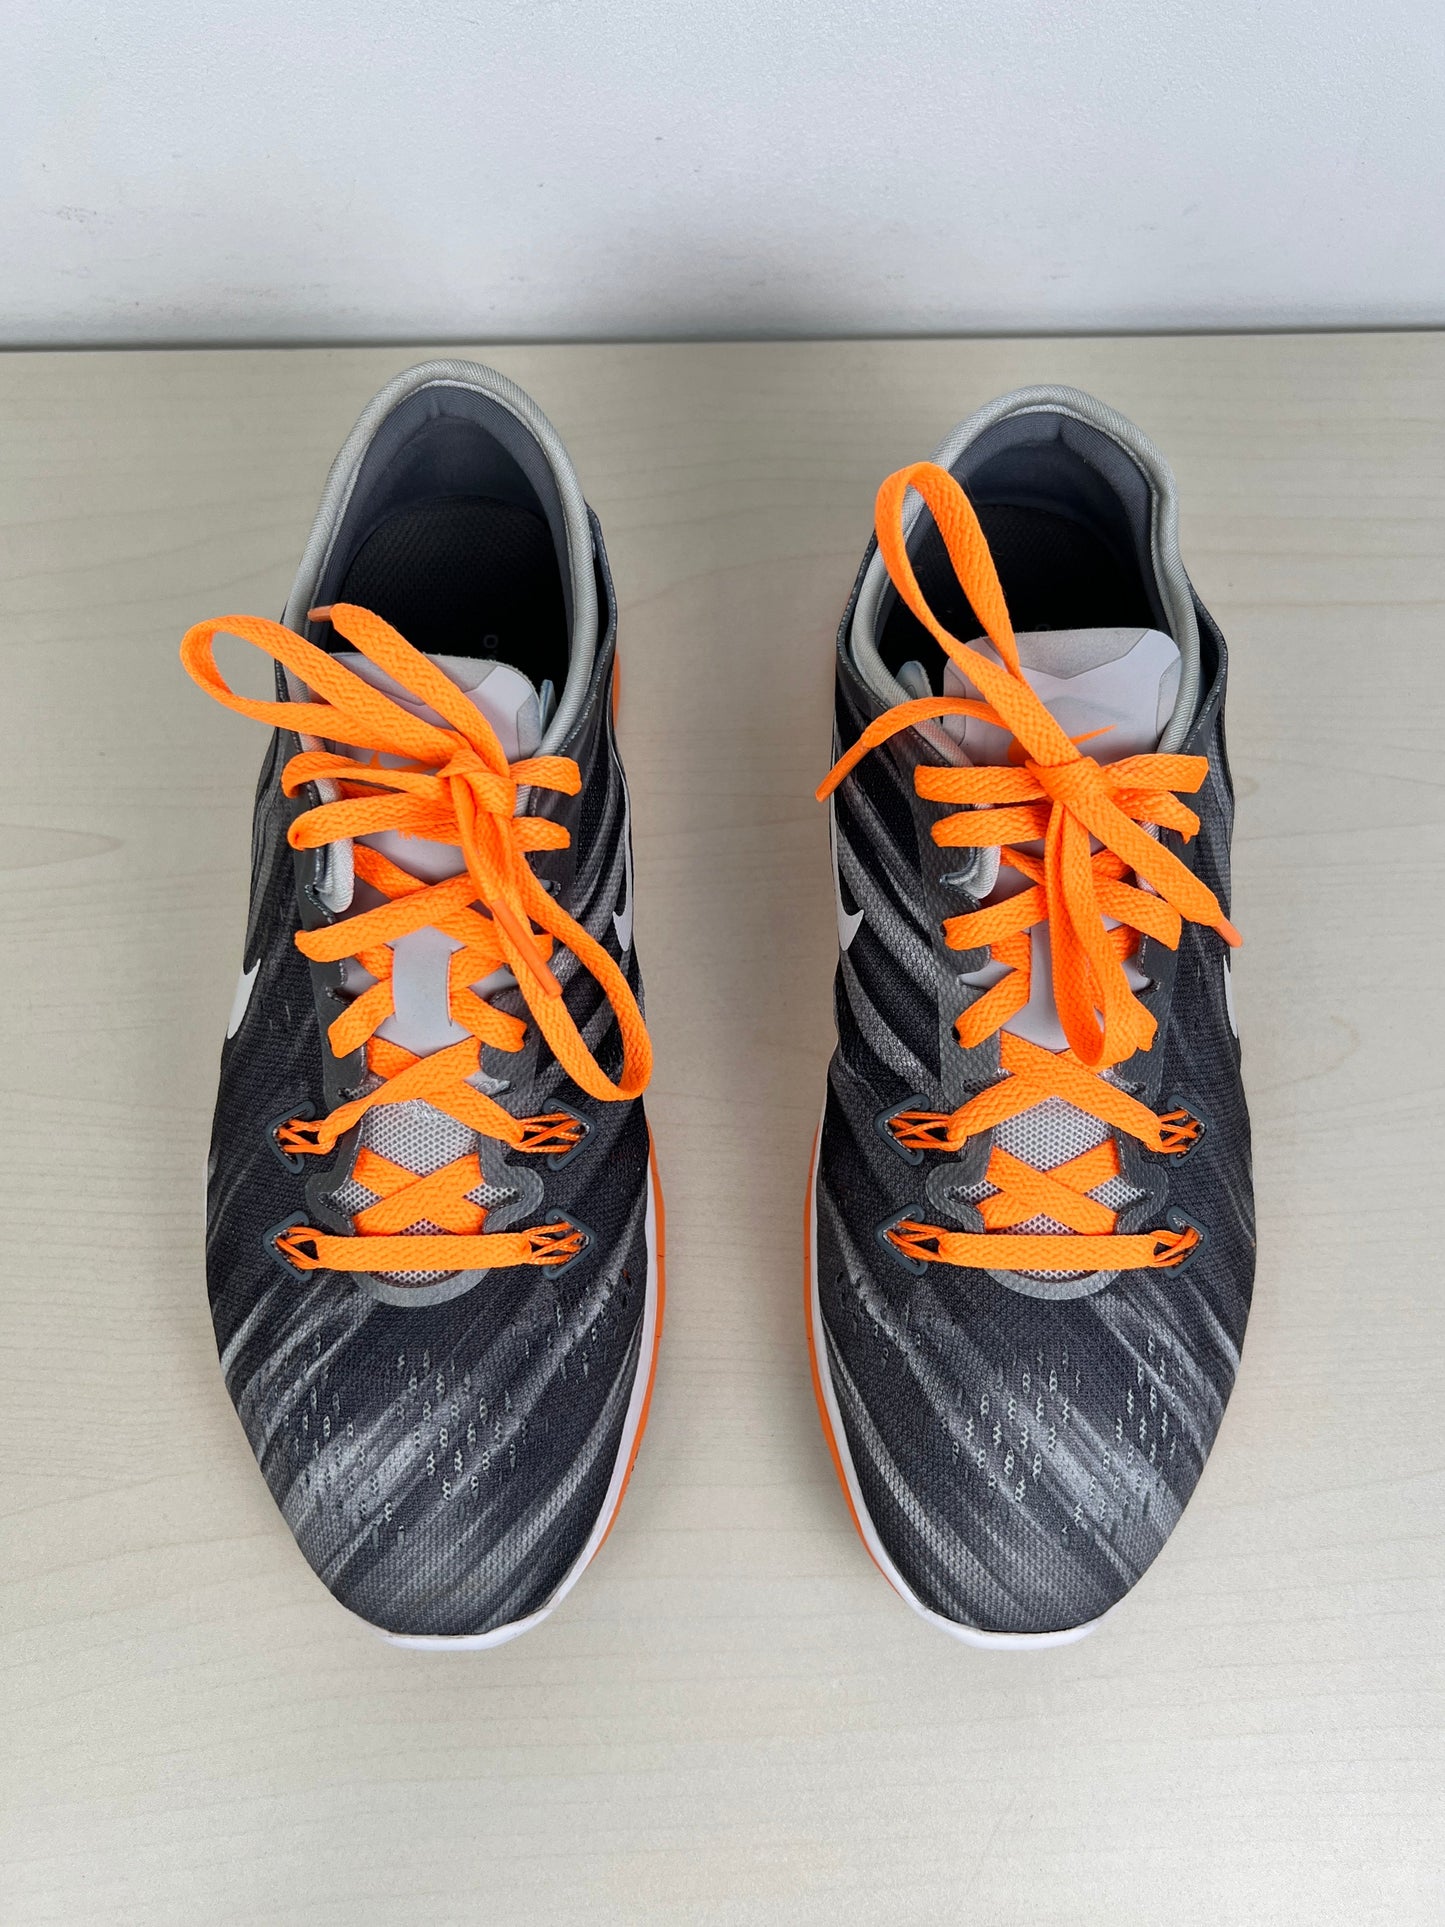 Grey & Orange Shoes Athletic Nike, Size 6.5